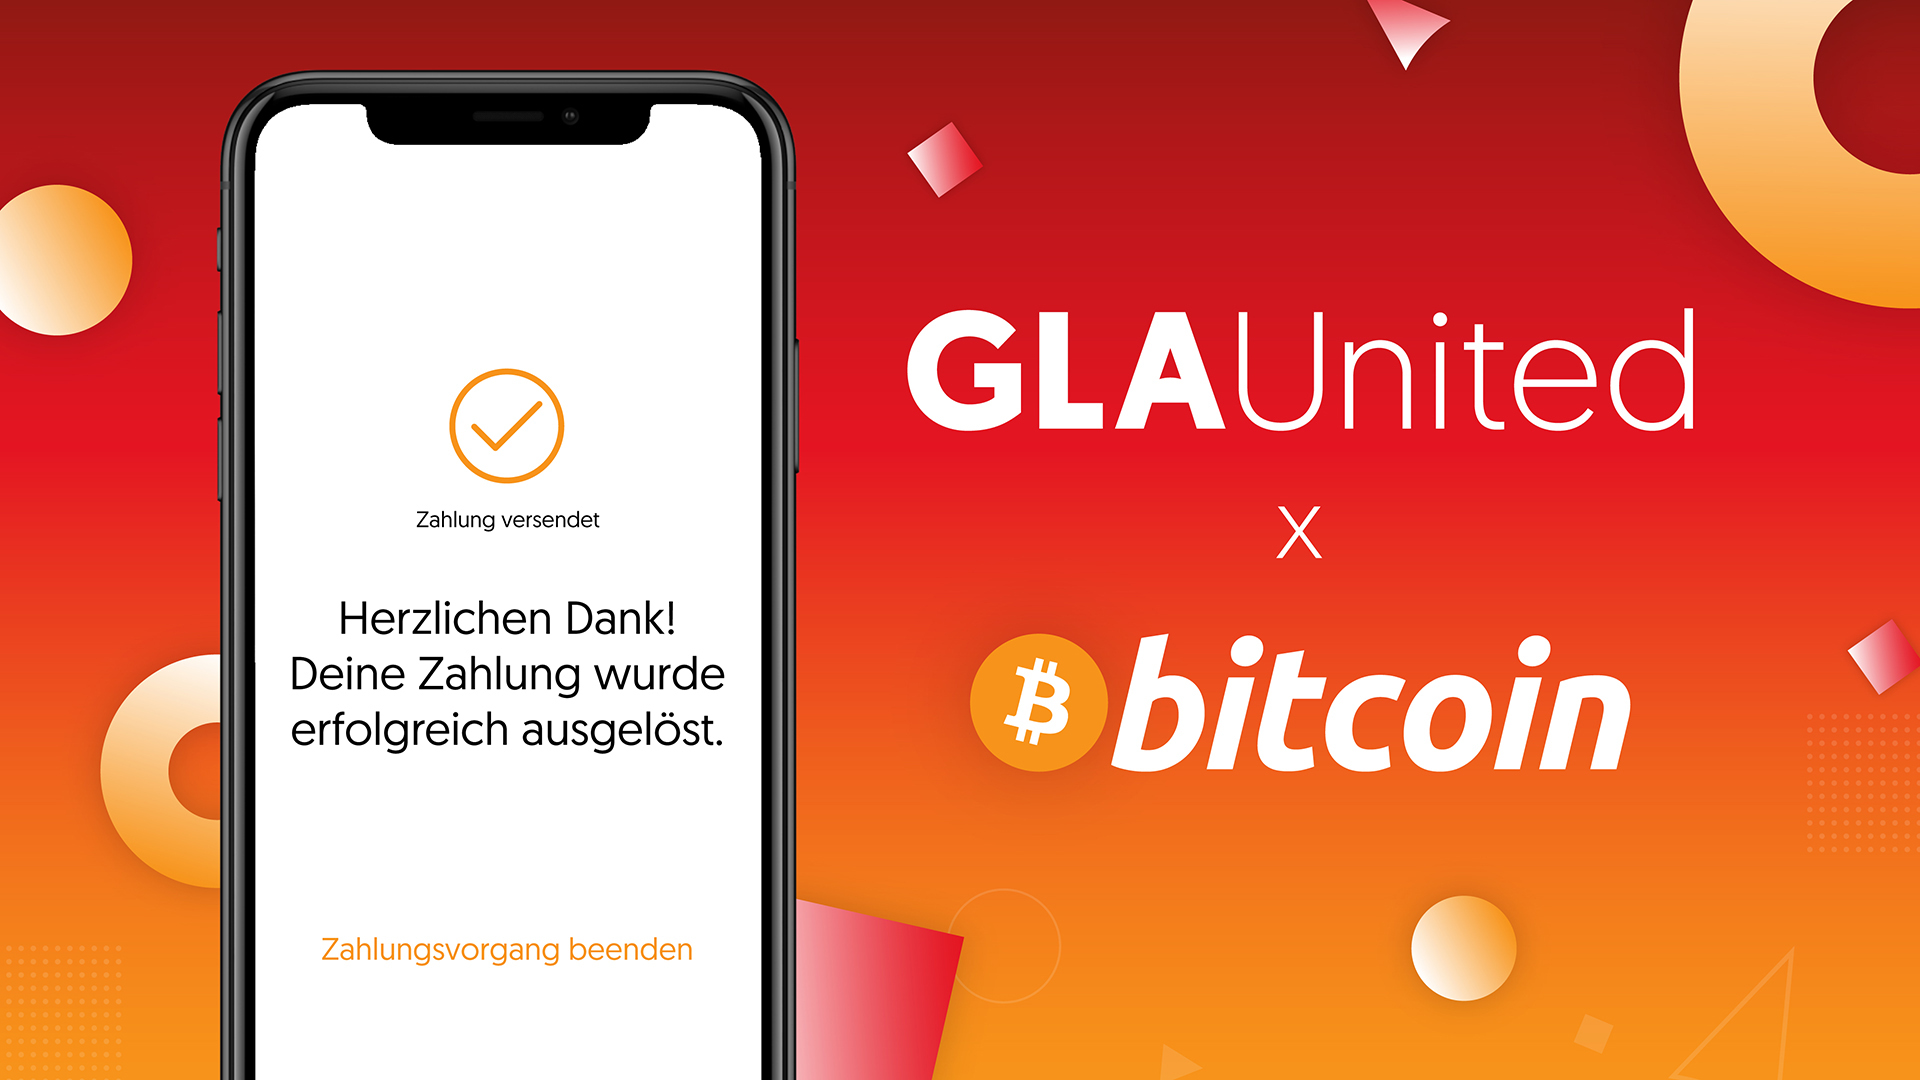 GLA United akzeptiert als erste Schweizer Full-Service-Agentur Bitcoin Zahlungen und setzt mit einer exklusiven Bitcoin-Aktion ein Zeichen.